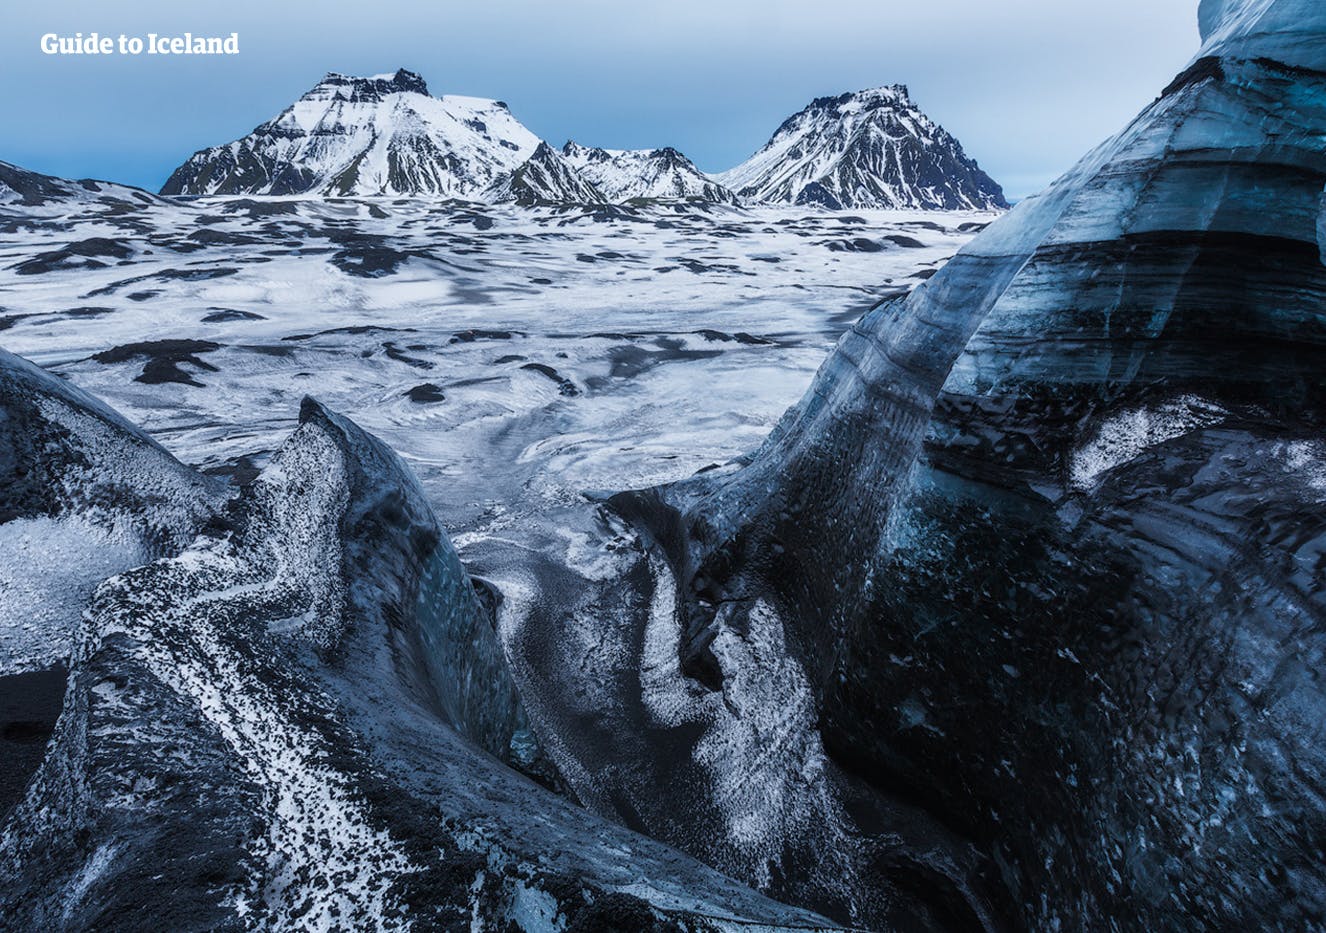 De gletsjertoppen van Myrdalsjokull zijn bedekt met zwarte as van eerdere vulkaanuitbarstingen.